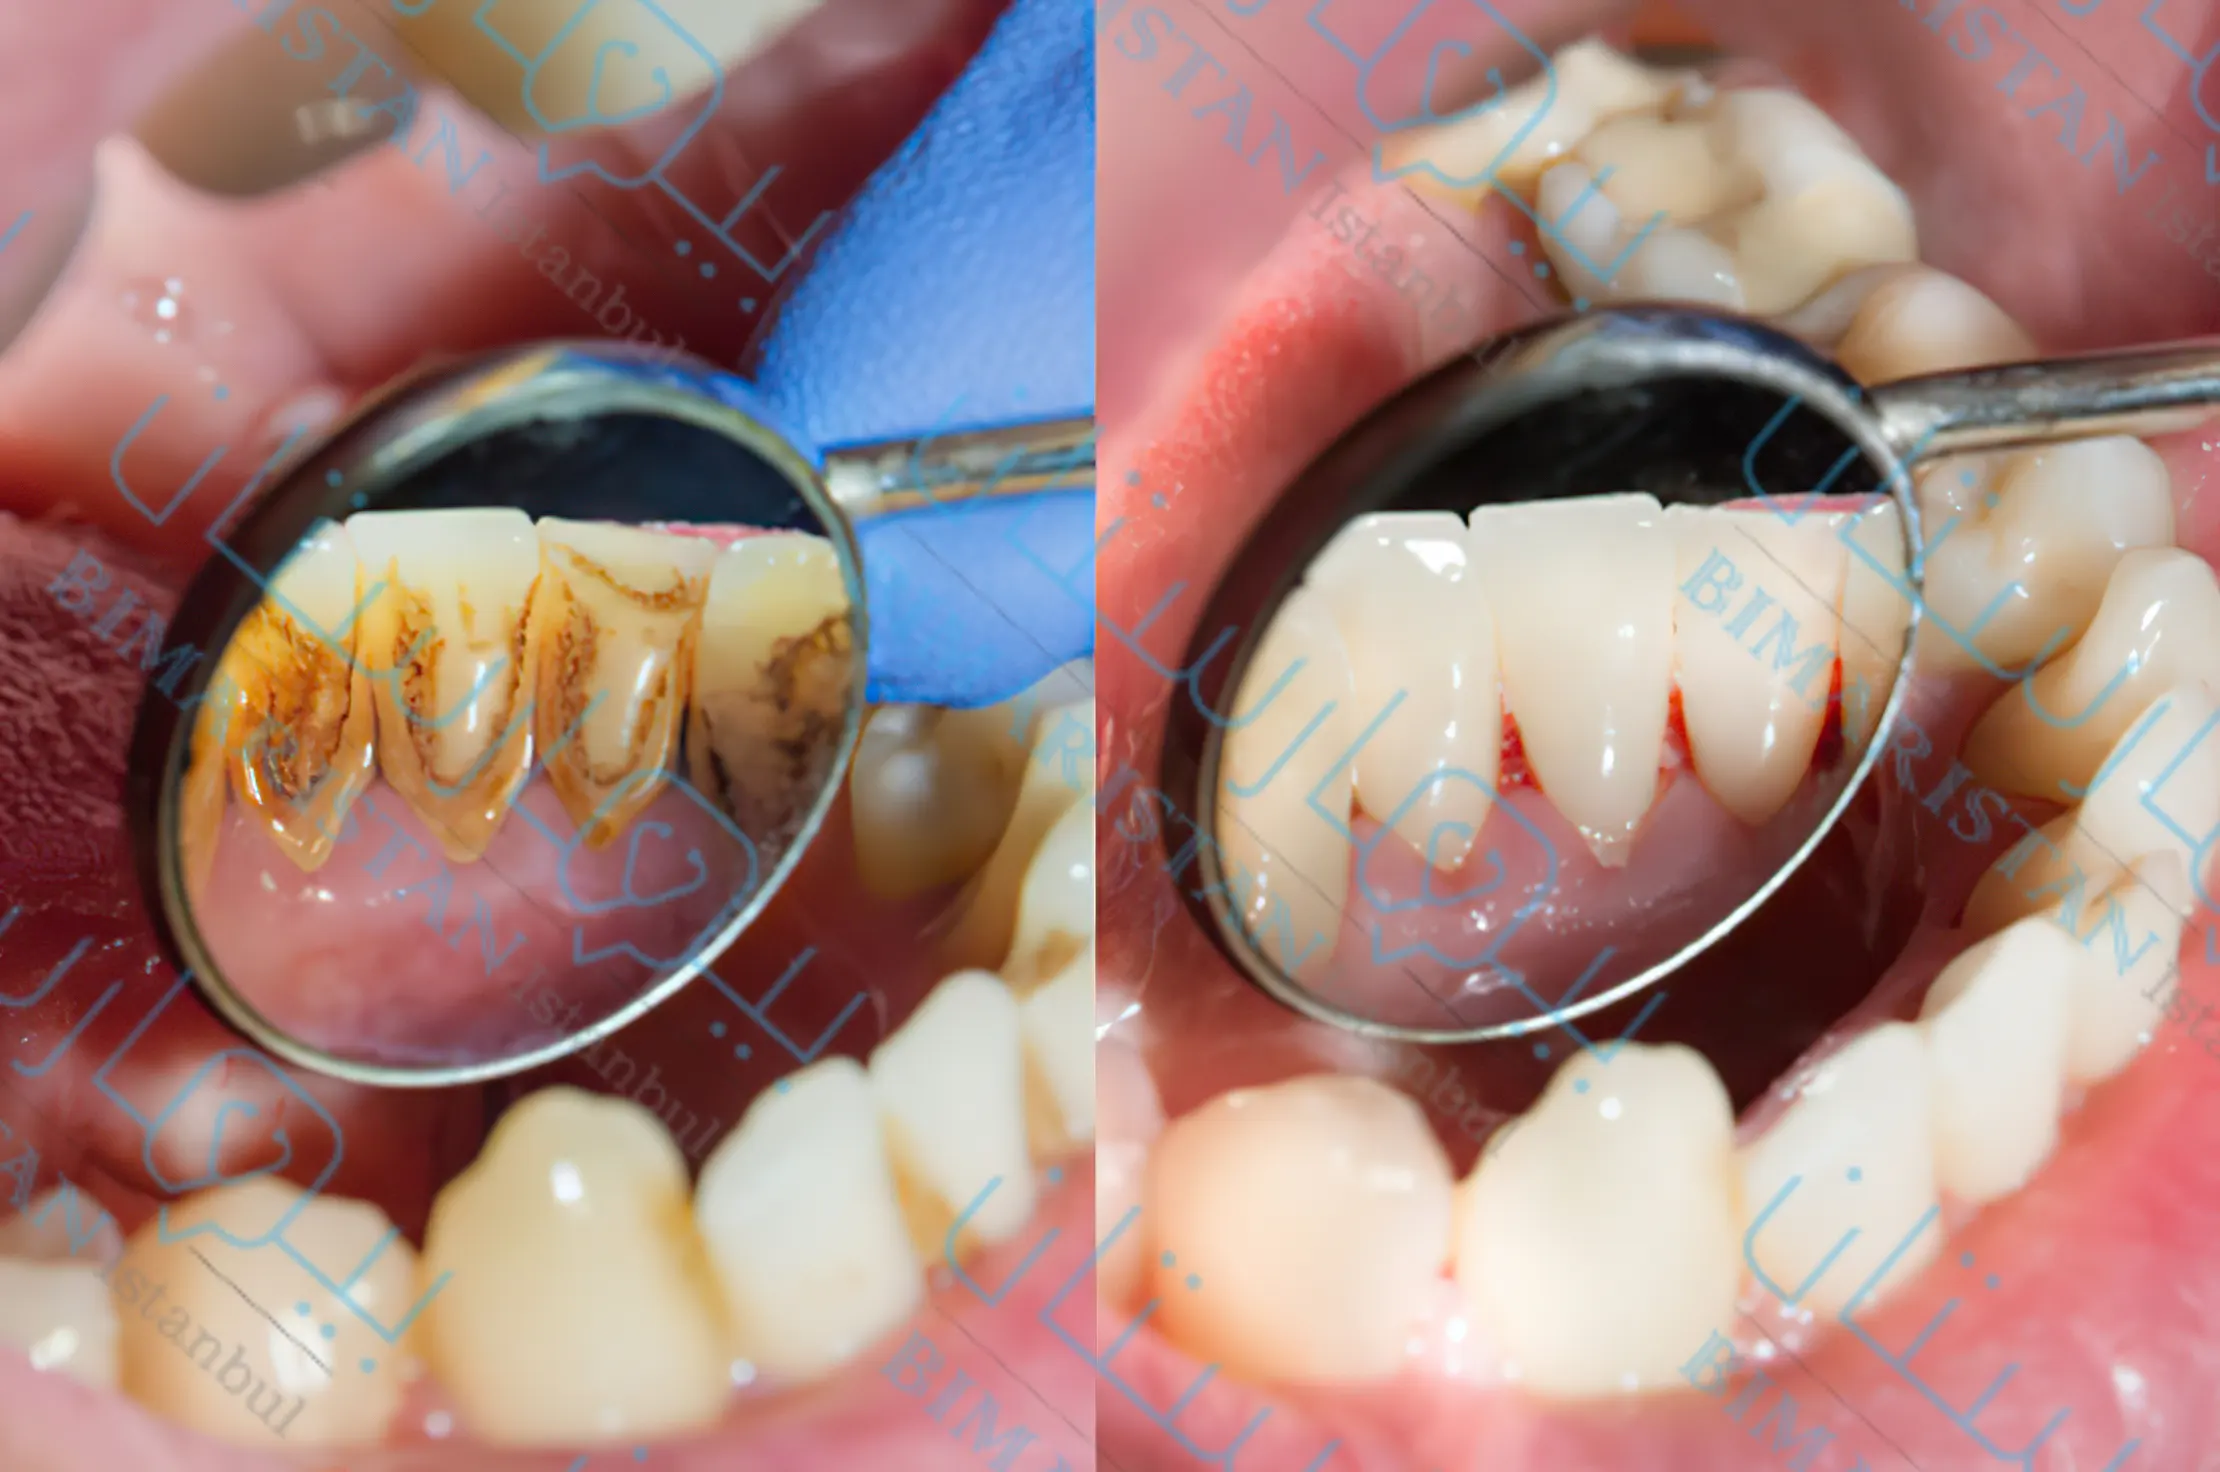 الصورة اليسرى تظهر ترسبات الجير على أعناق الأسنان وعلى اليمين تظهر الأسنان بعد تنظيفعا وإزالة الجير